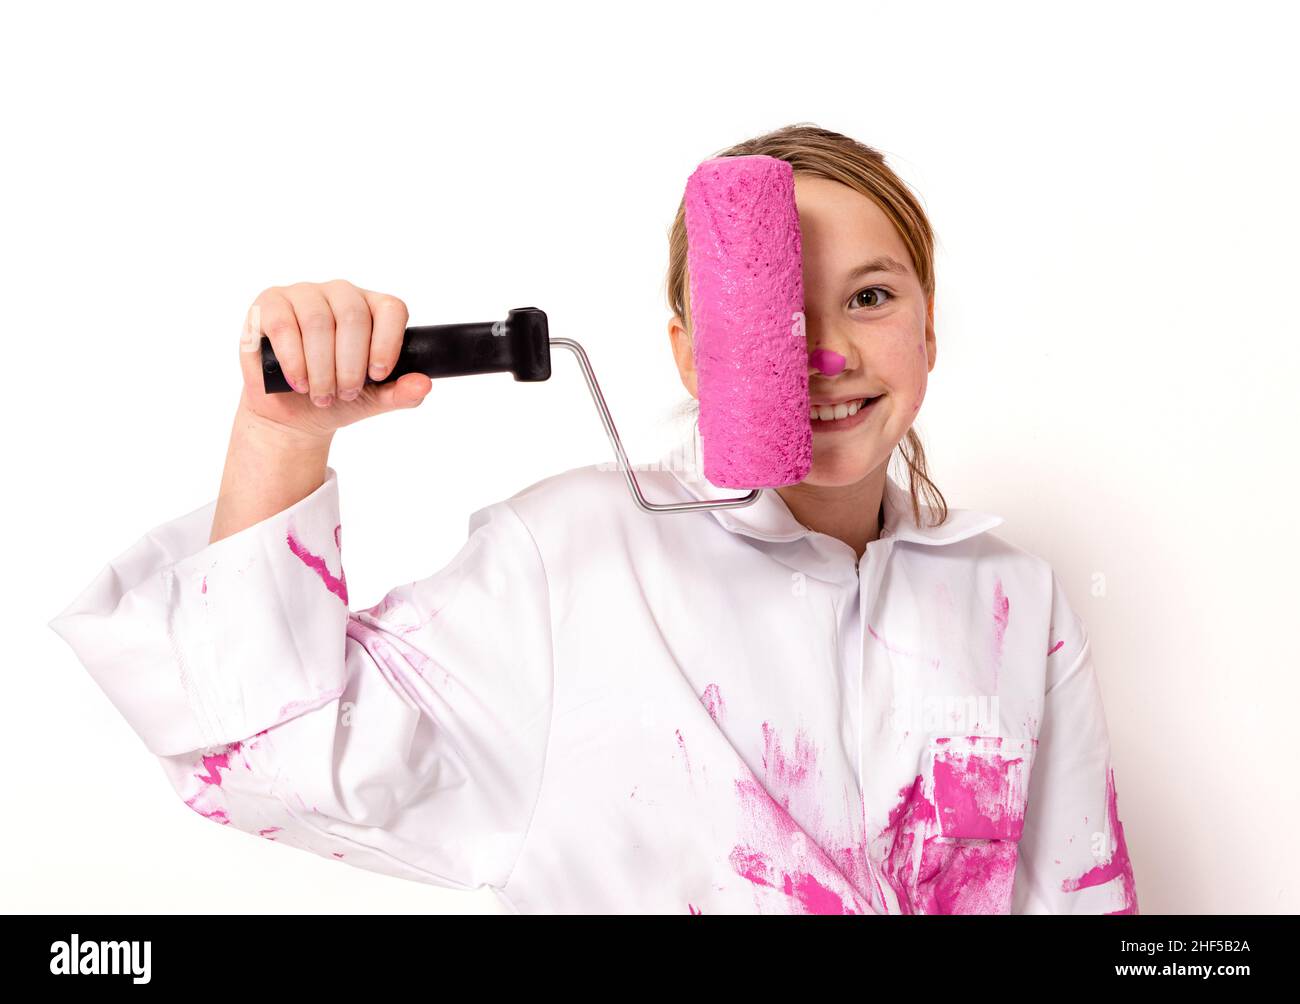 Joven de 10 años, sosteniendo un rodillo con pintura rosa delante de su cara. Ella está mirando la cámara con una sonrisa amable. Foto de stock